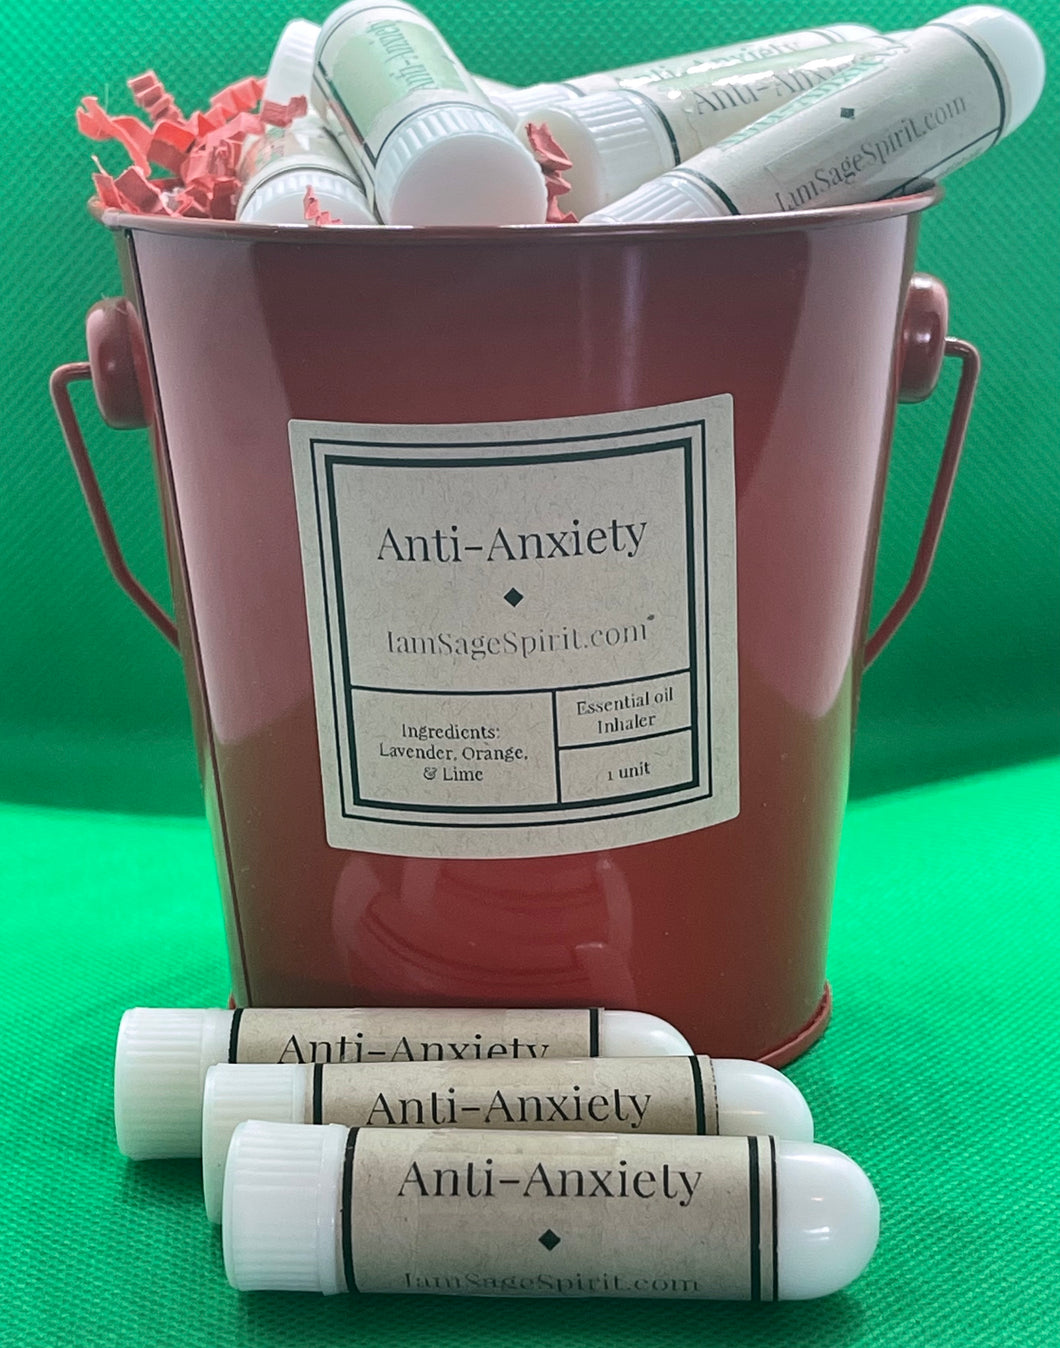 Anti-anxiety (Essential oil inhaler)